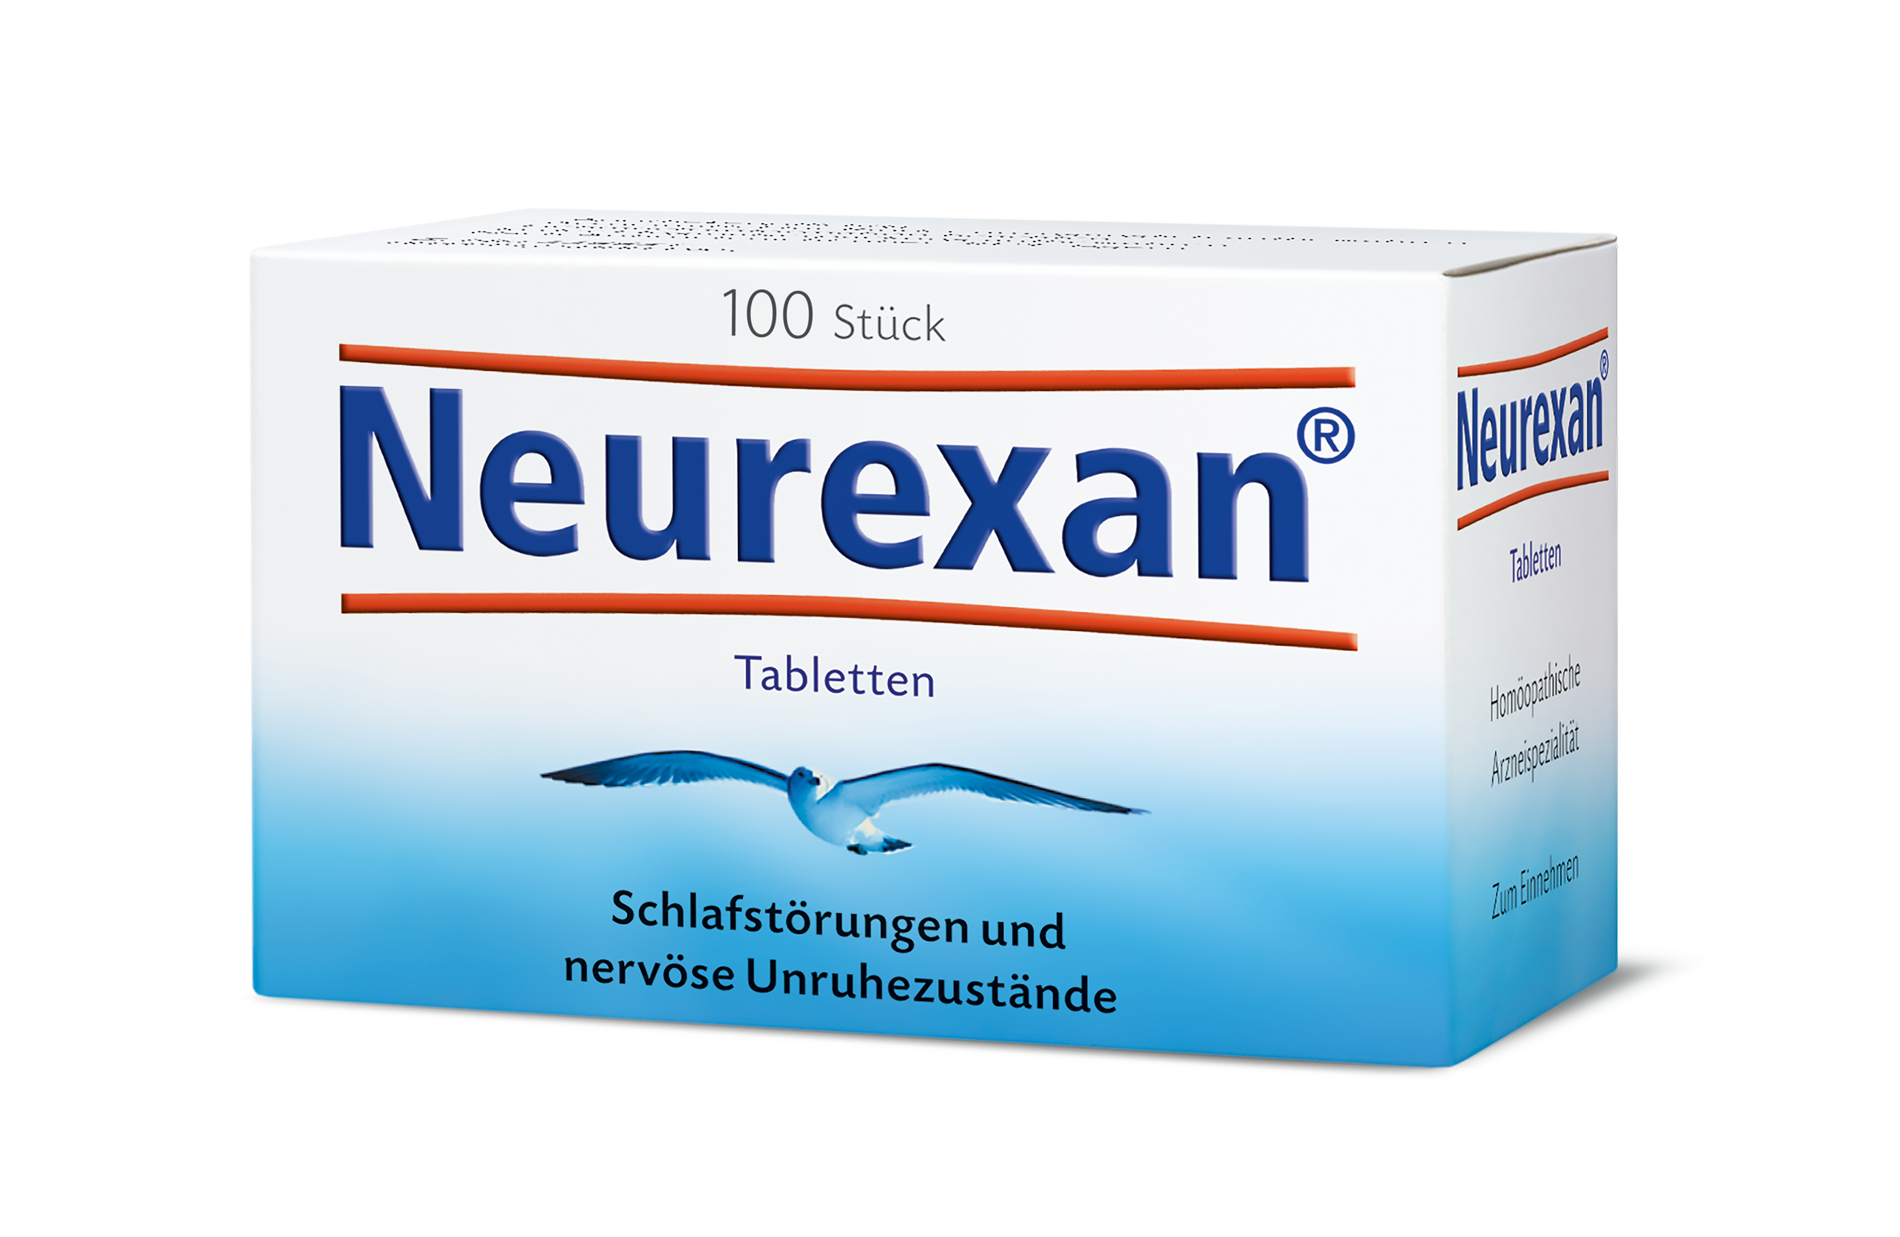 Neurexan - Tabletten